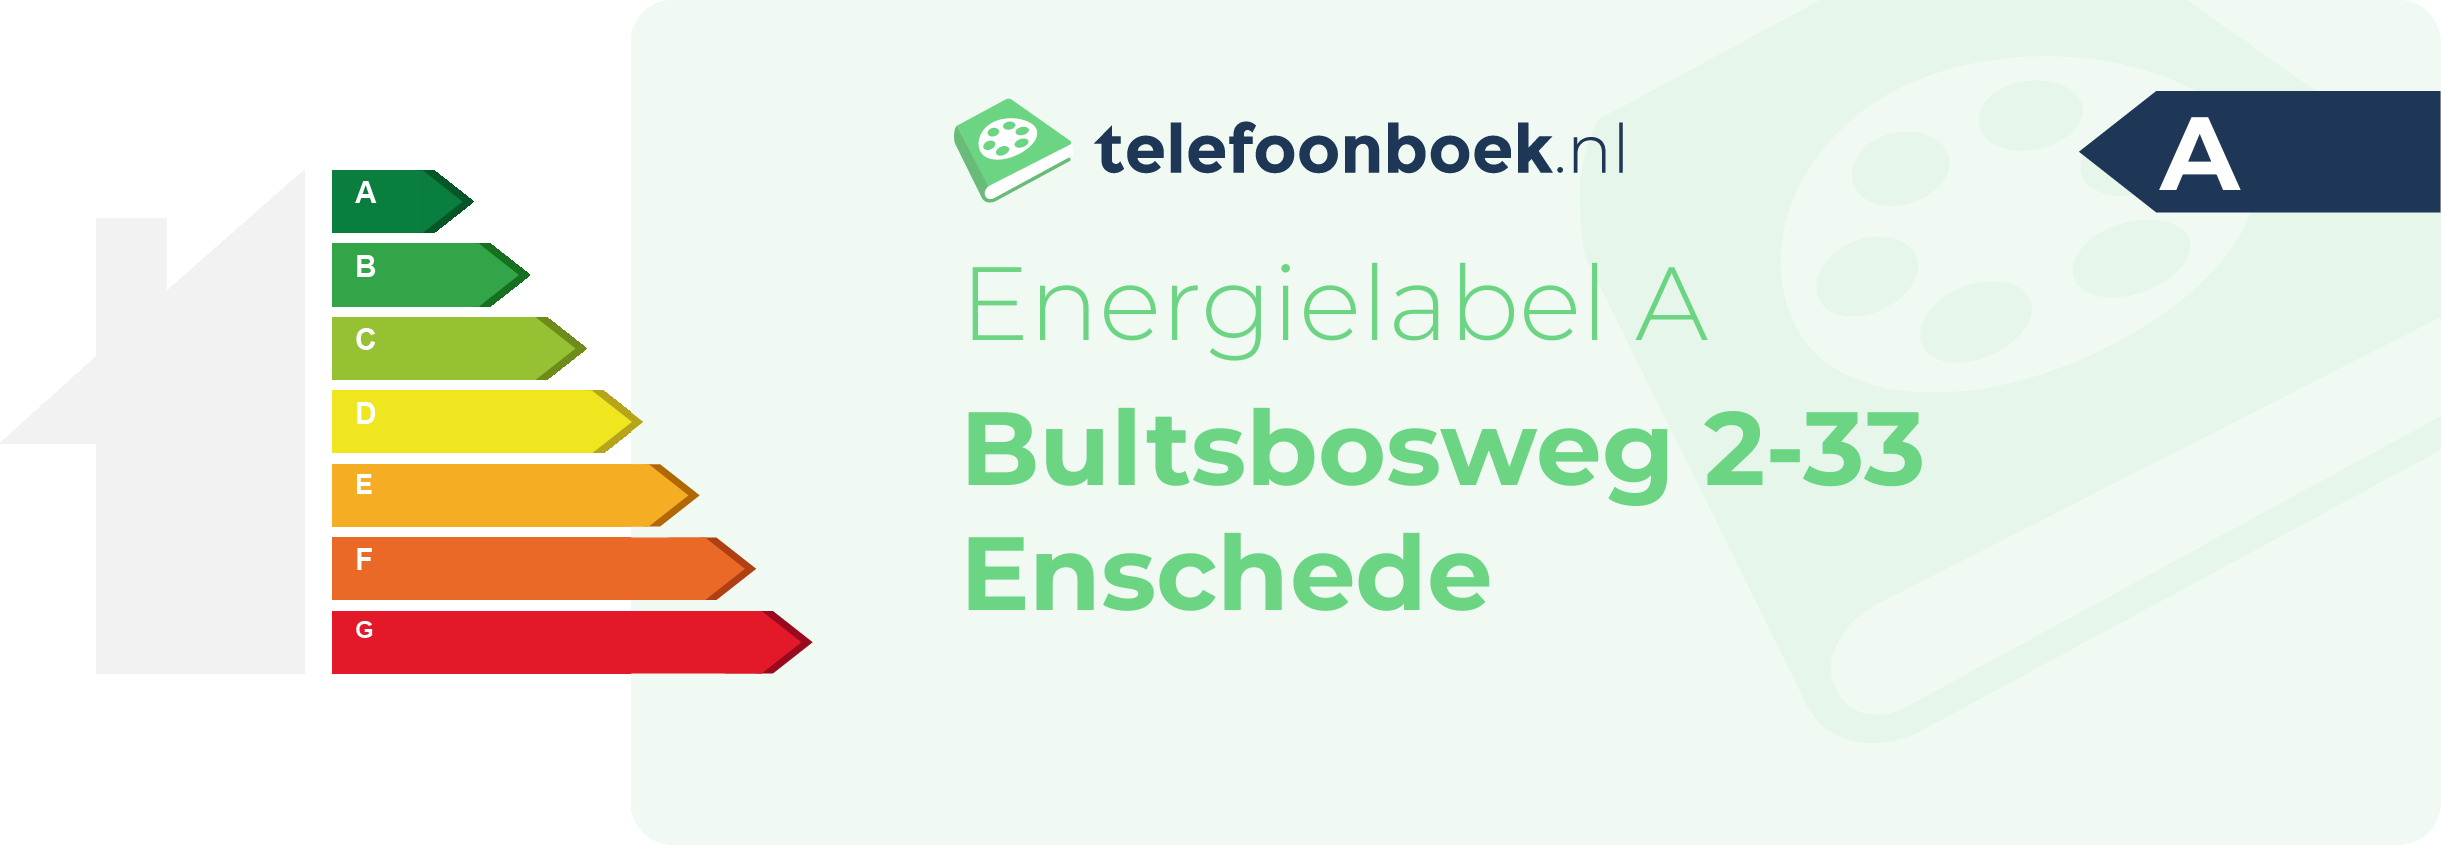 Energielabel Bultsbosweg 2-33 Enschede